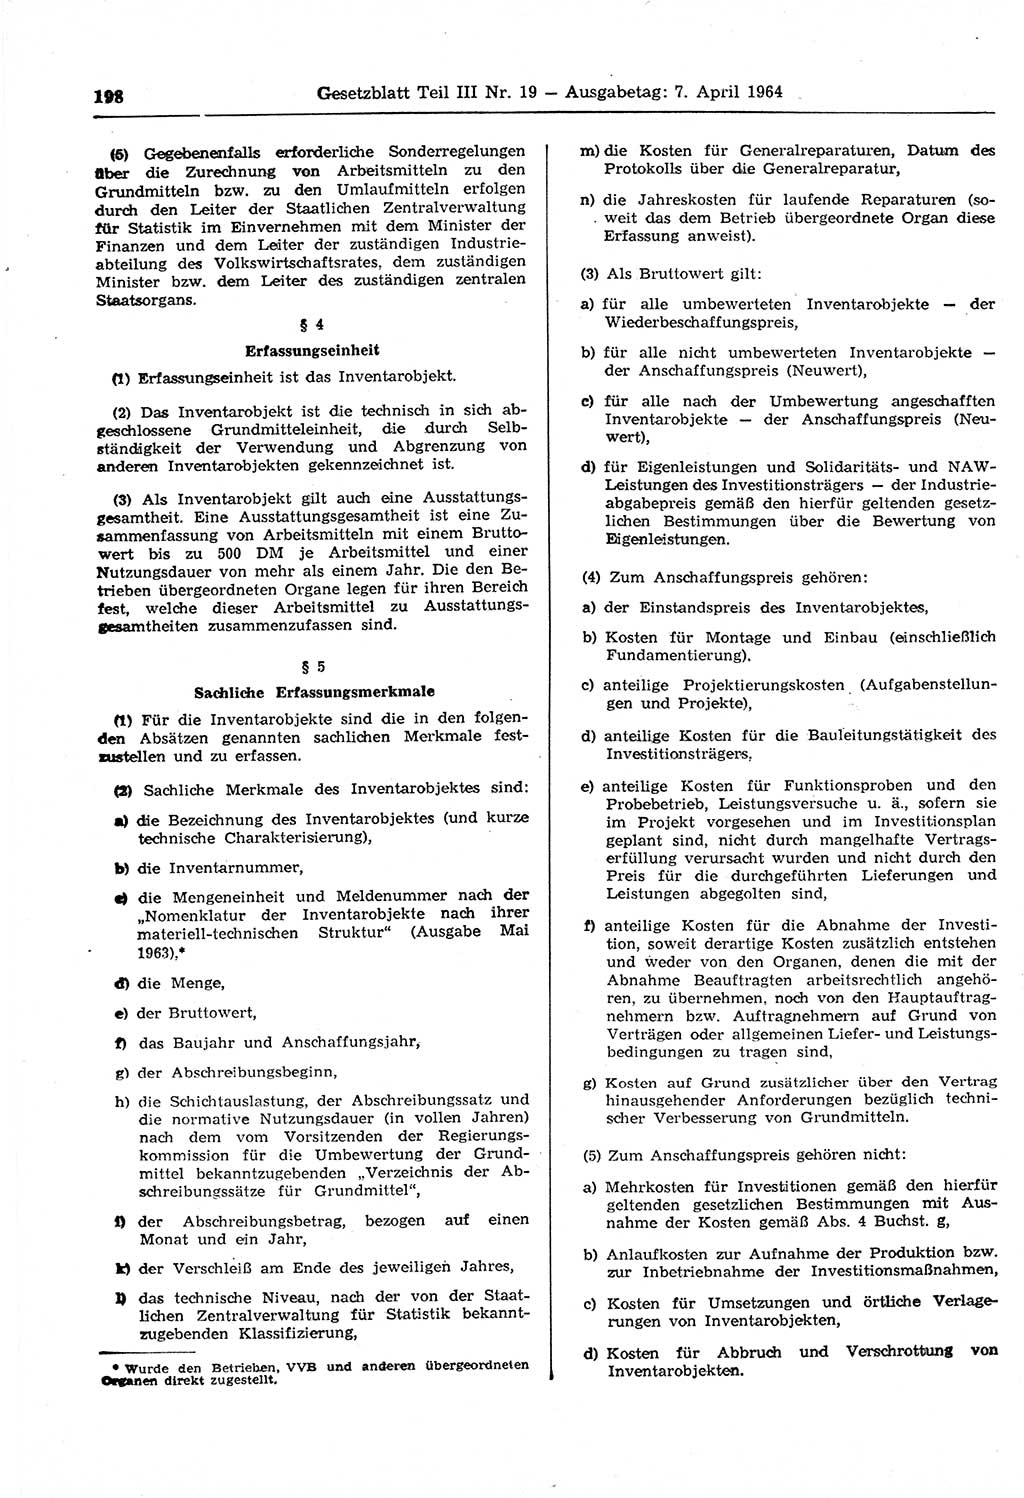 Gesetzblatt (GBl.) der Deutschen Demokratischen Republik (DDR) Teil ⅠⅠⅠ 1964, Seite 198 (GBl. DDR ⅠⅠⅠ 1964, S. 198)